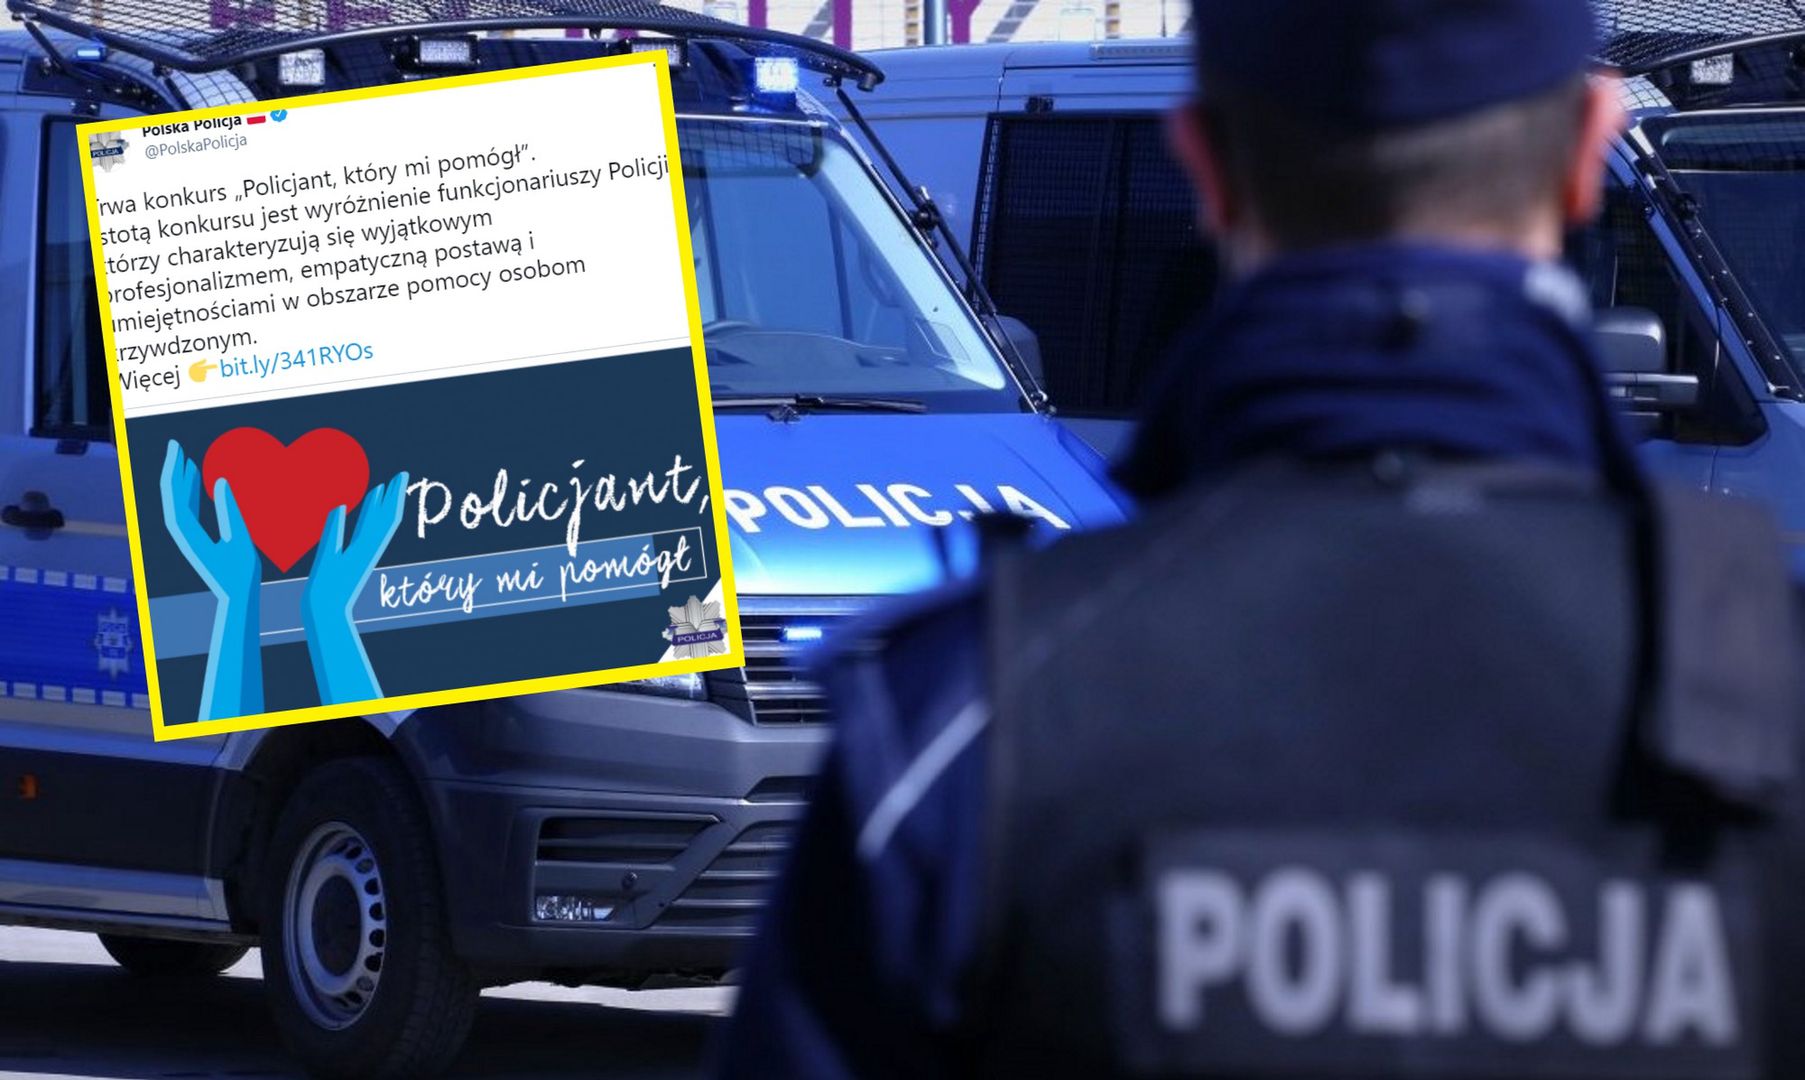 Polska policja chciała ocieplić swój wizerunek. Efekt odwrotny od zamierzonego